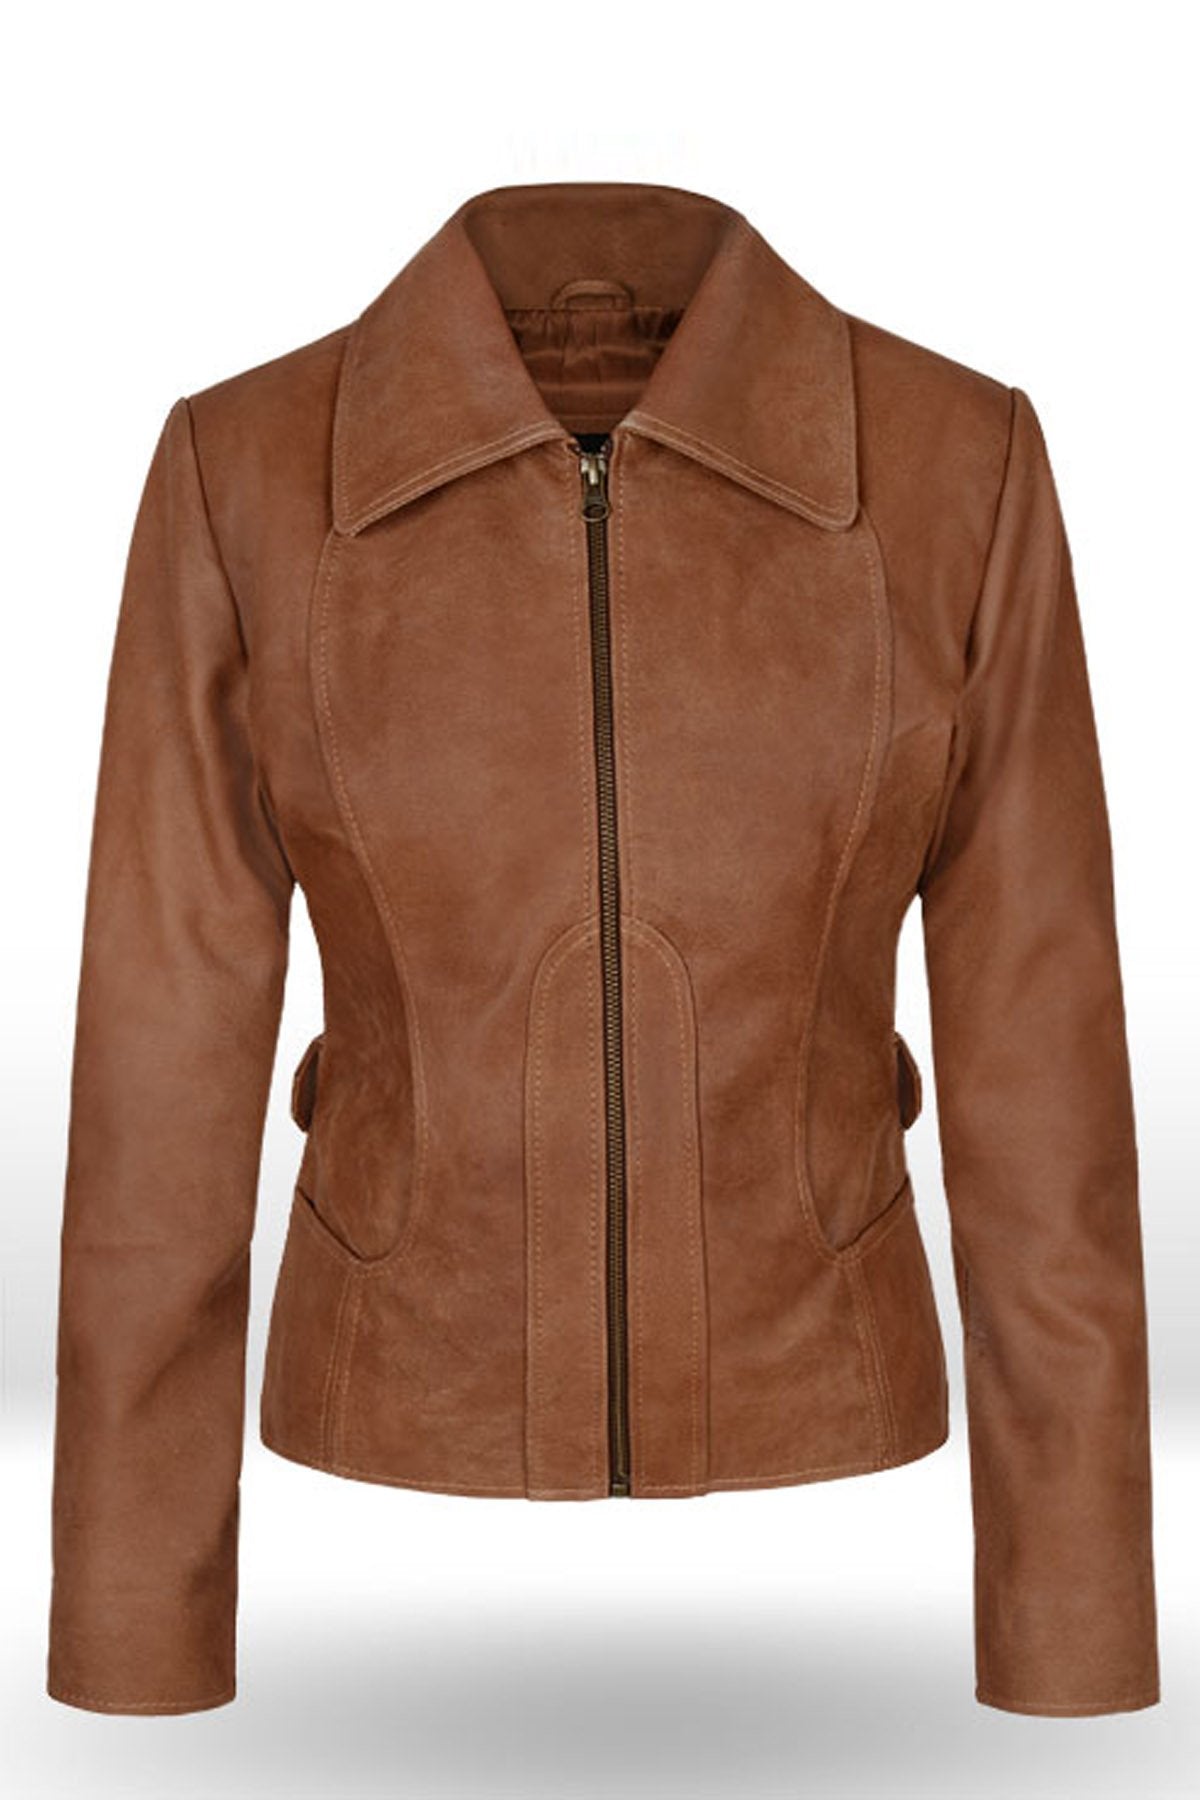 Loving Jennifer Lopez Gigli Leather Jacket For Women’s